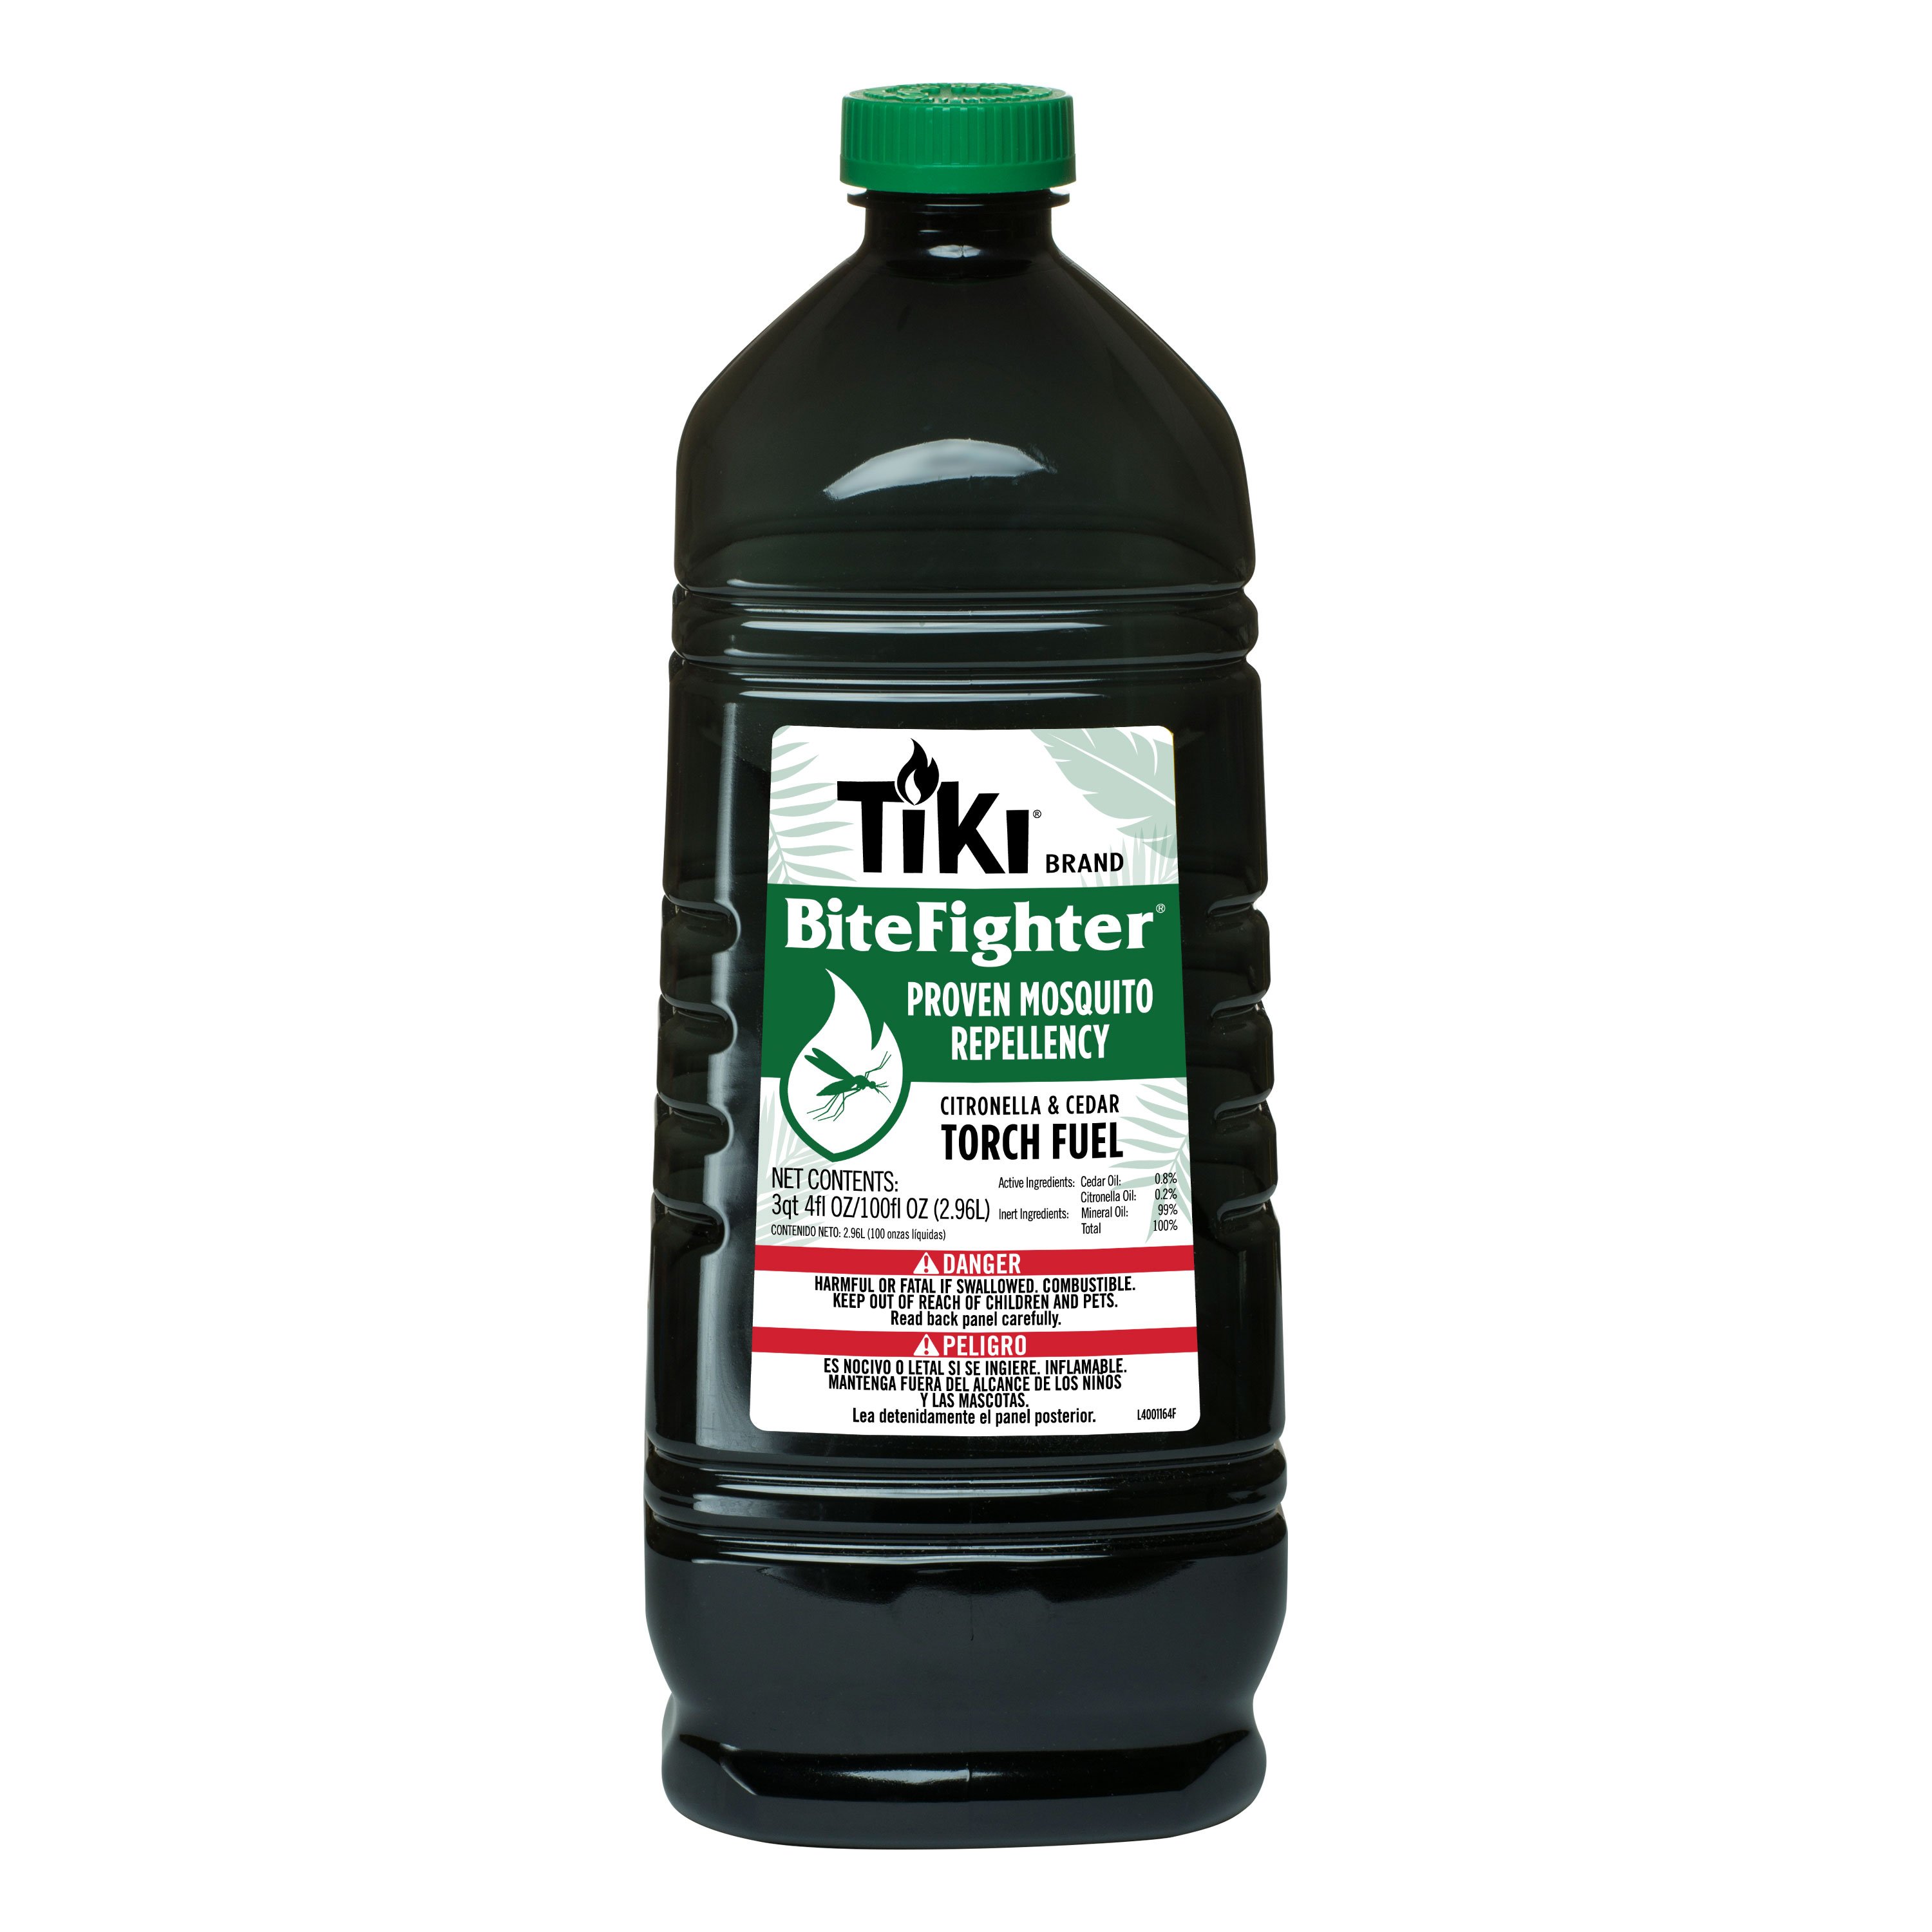 Tiki® BiteFighter® Torch Fuel, 100 oz. Bottle - 1216155